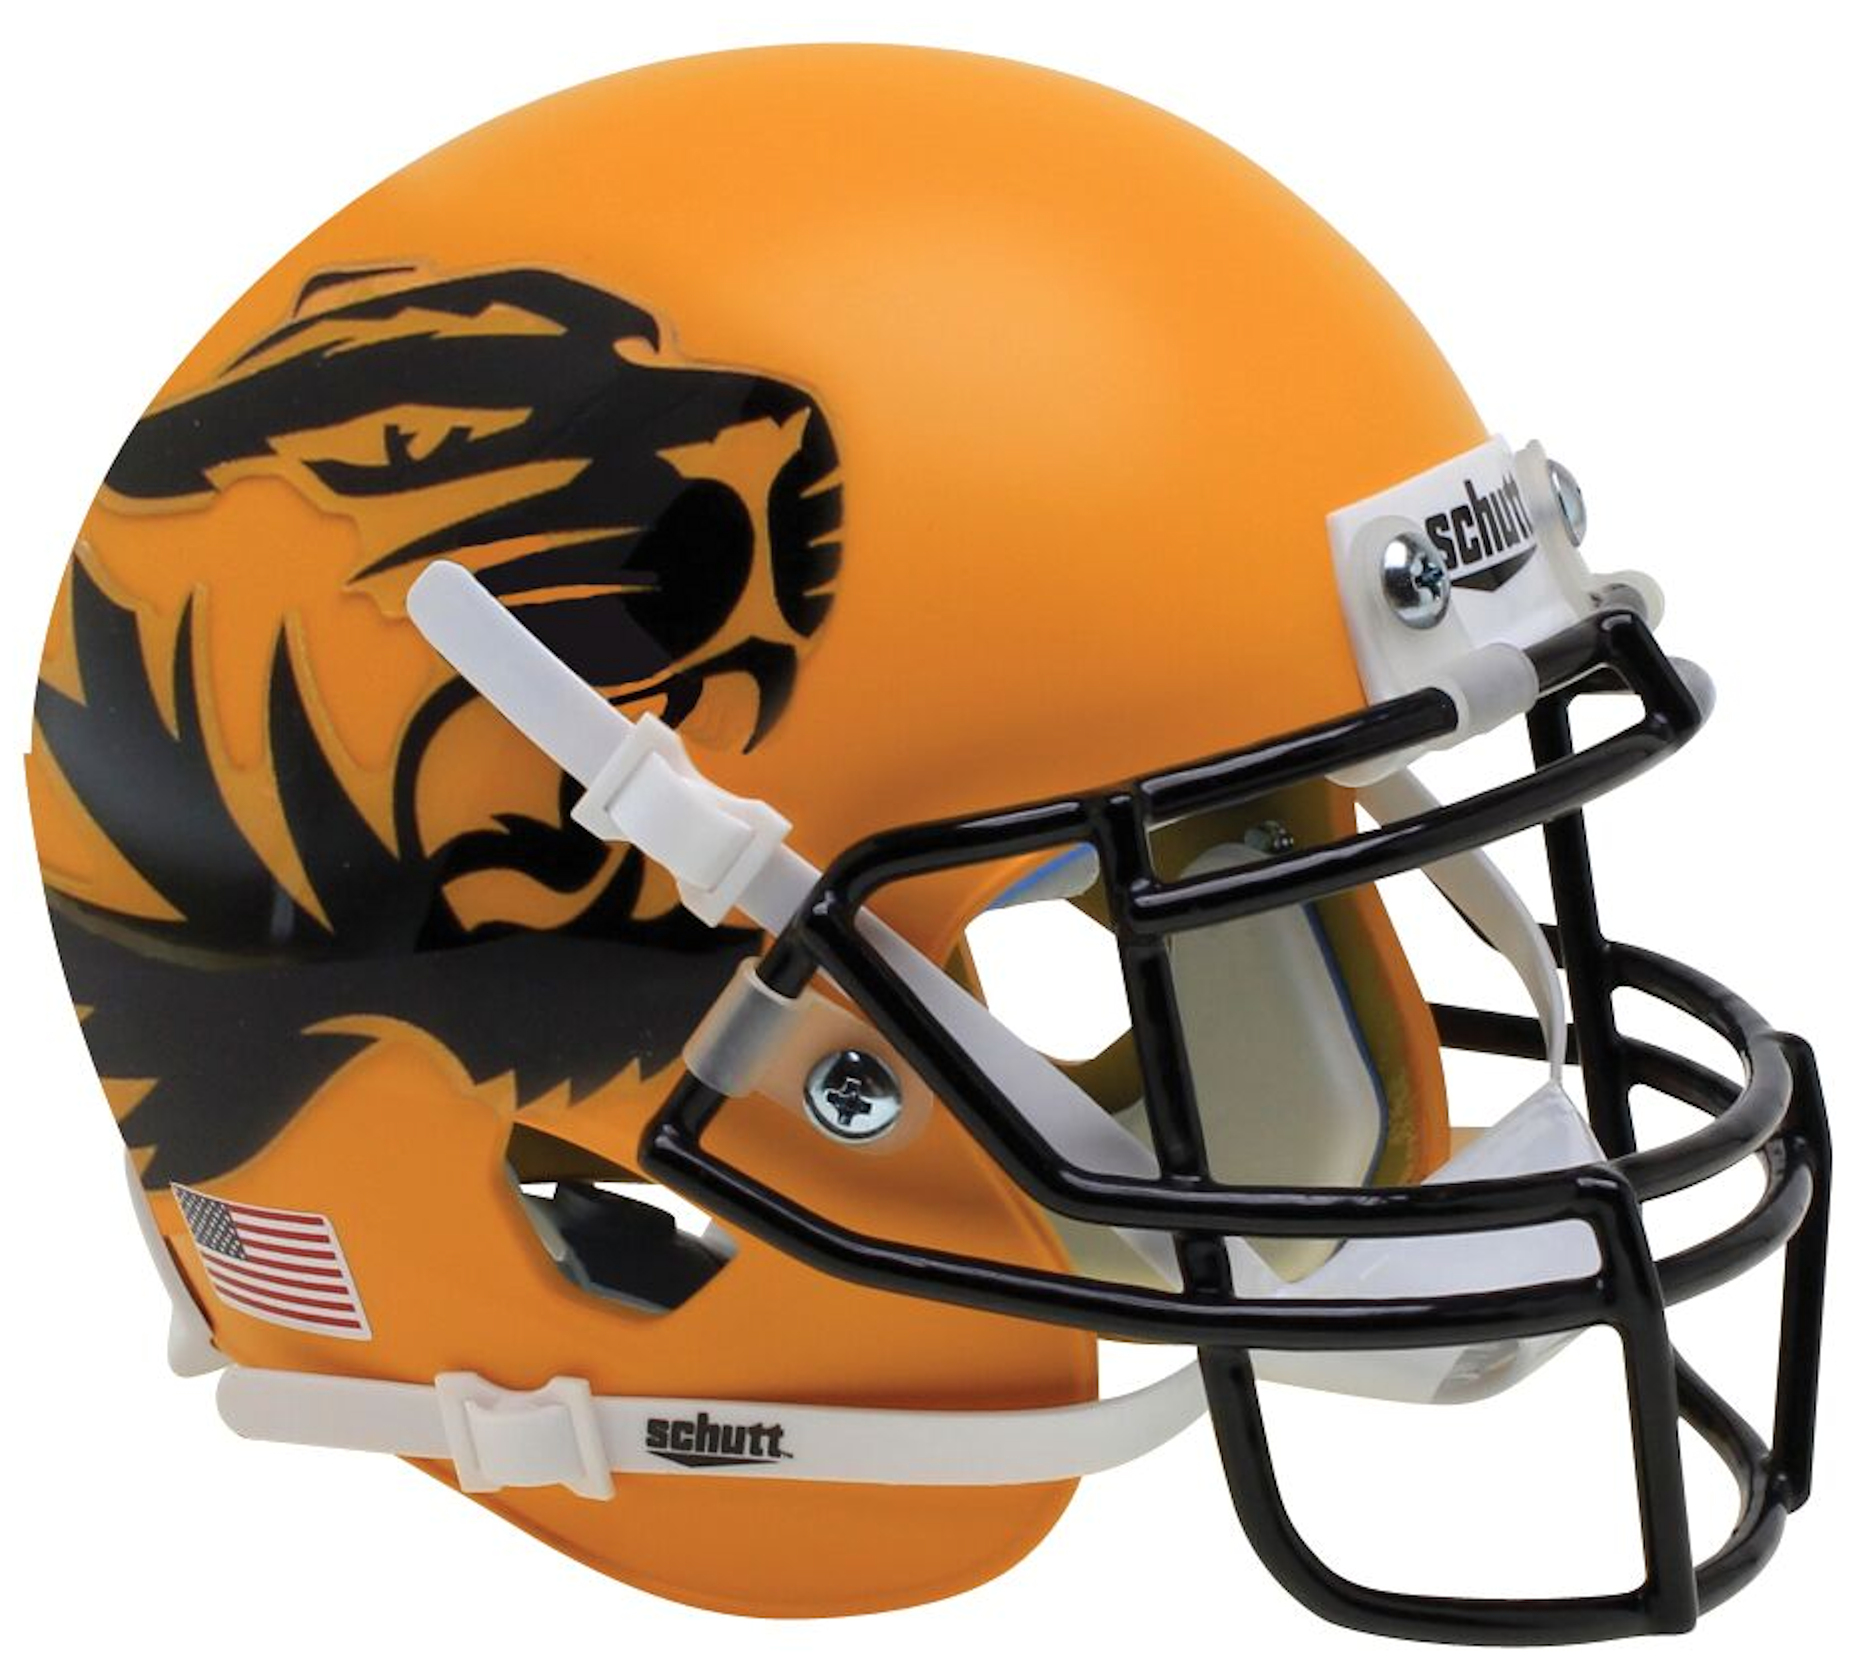 Missouri Tigers Authentic College XP Football Helmet Schutt <B>Yellow Large Tiger</B>